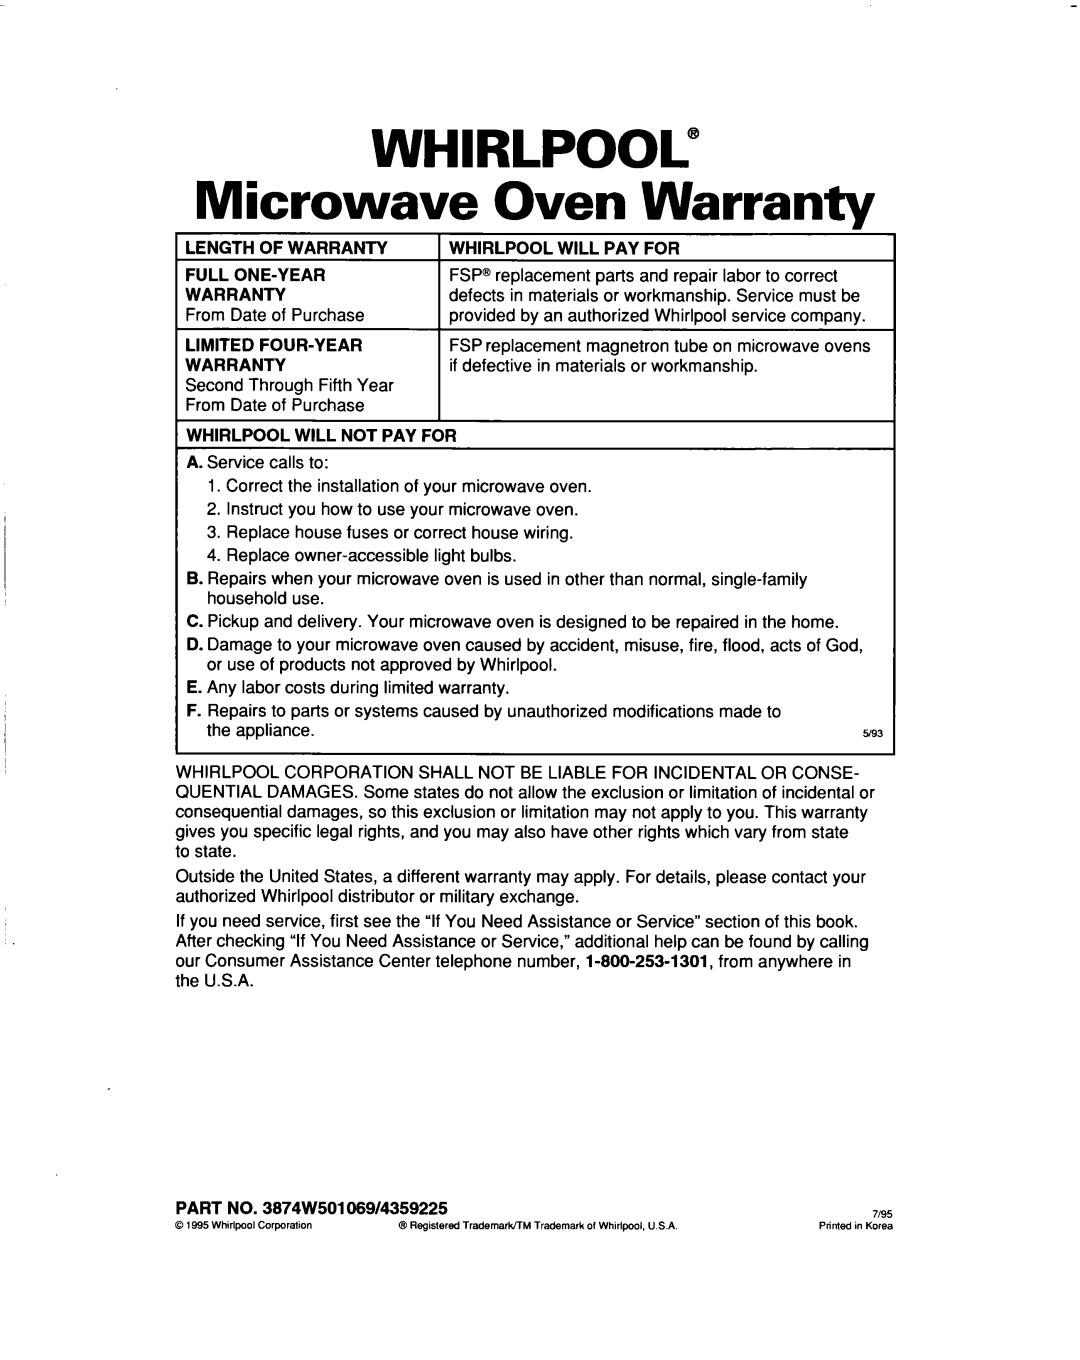 Whirlpool MH9115XB warranty WHIRLPOOL” Microwave Oven Warranty 